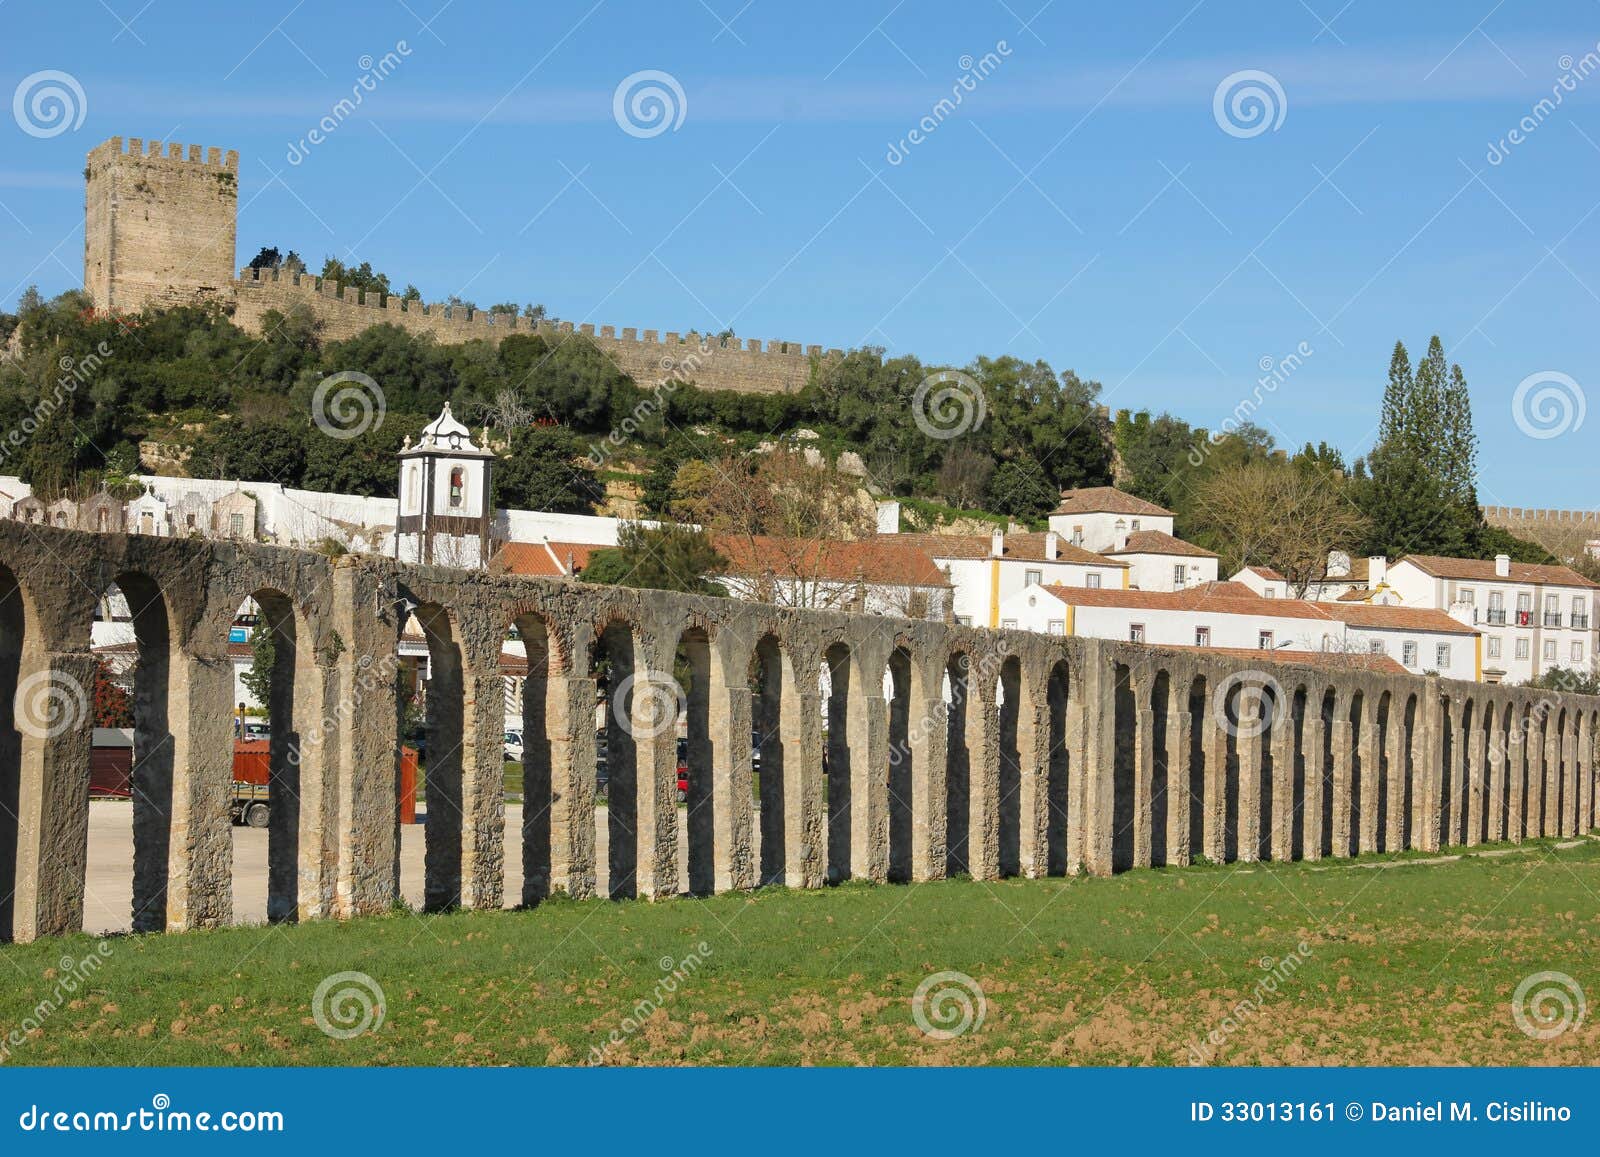 old aqueduct. obidos. portugal